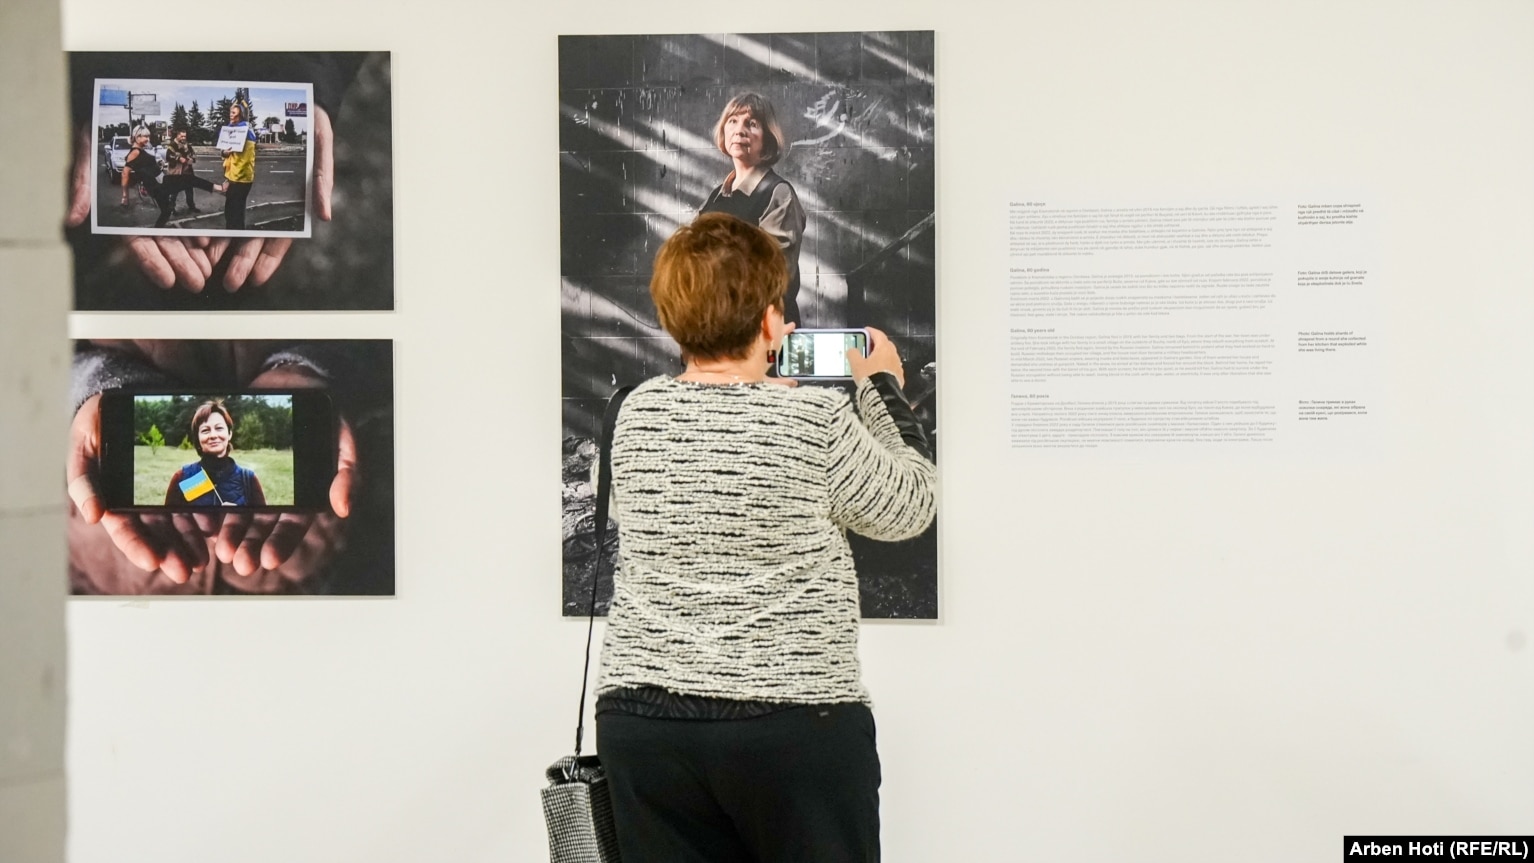 Një grua fotografon një nga punimet e paraqitura në ekspozitën "Ukraina: Një krim lufte". Përshkrimi i secilës fotografi të paraqitur në ekspozitë ishte në gjuhën shqipe, serbe, angleze dhe ukrainase.